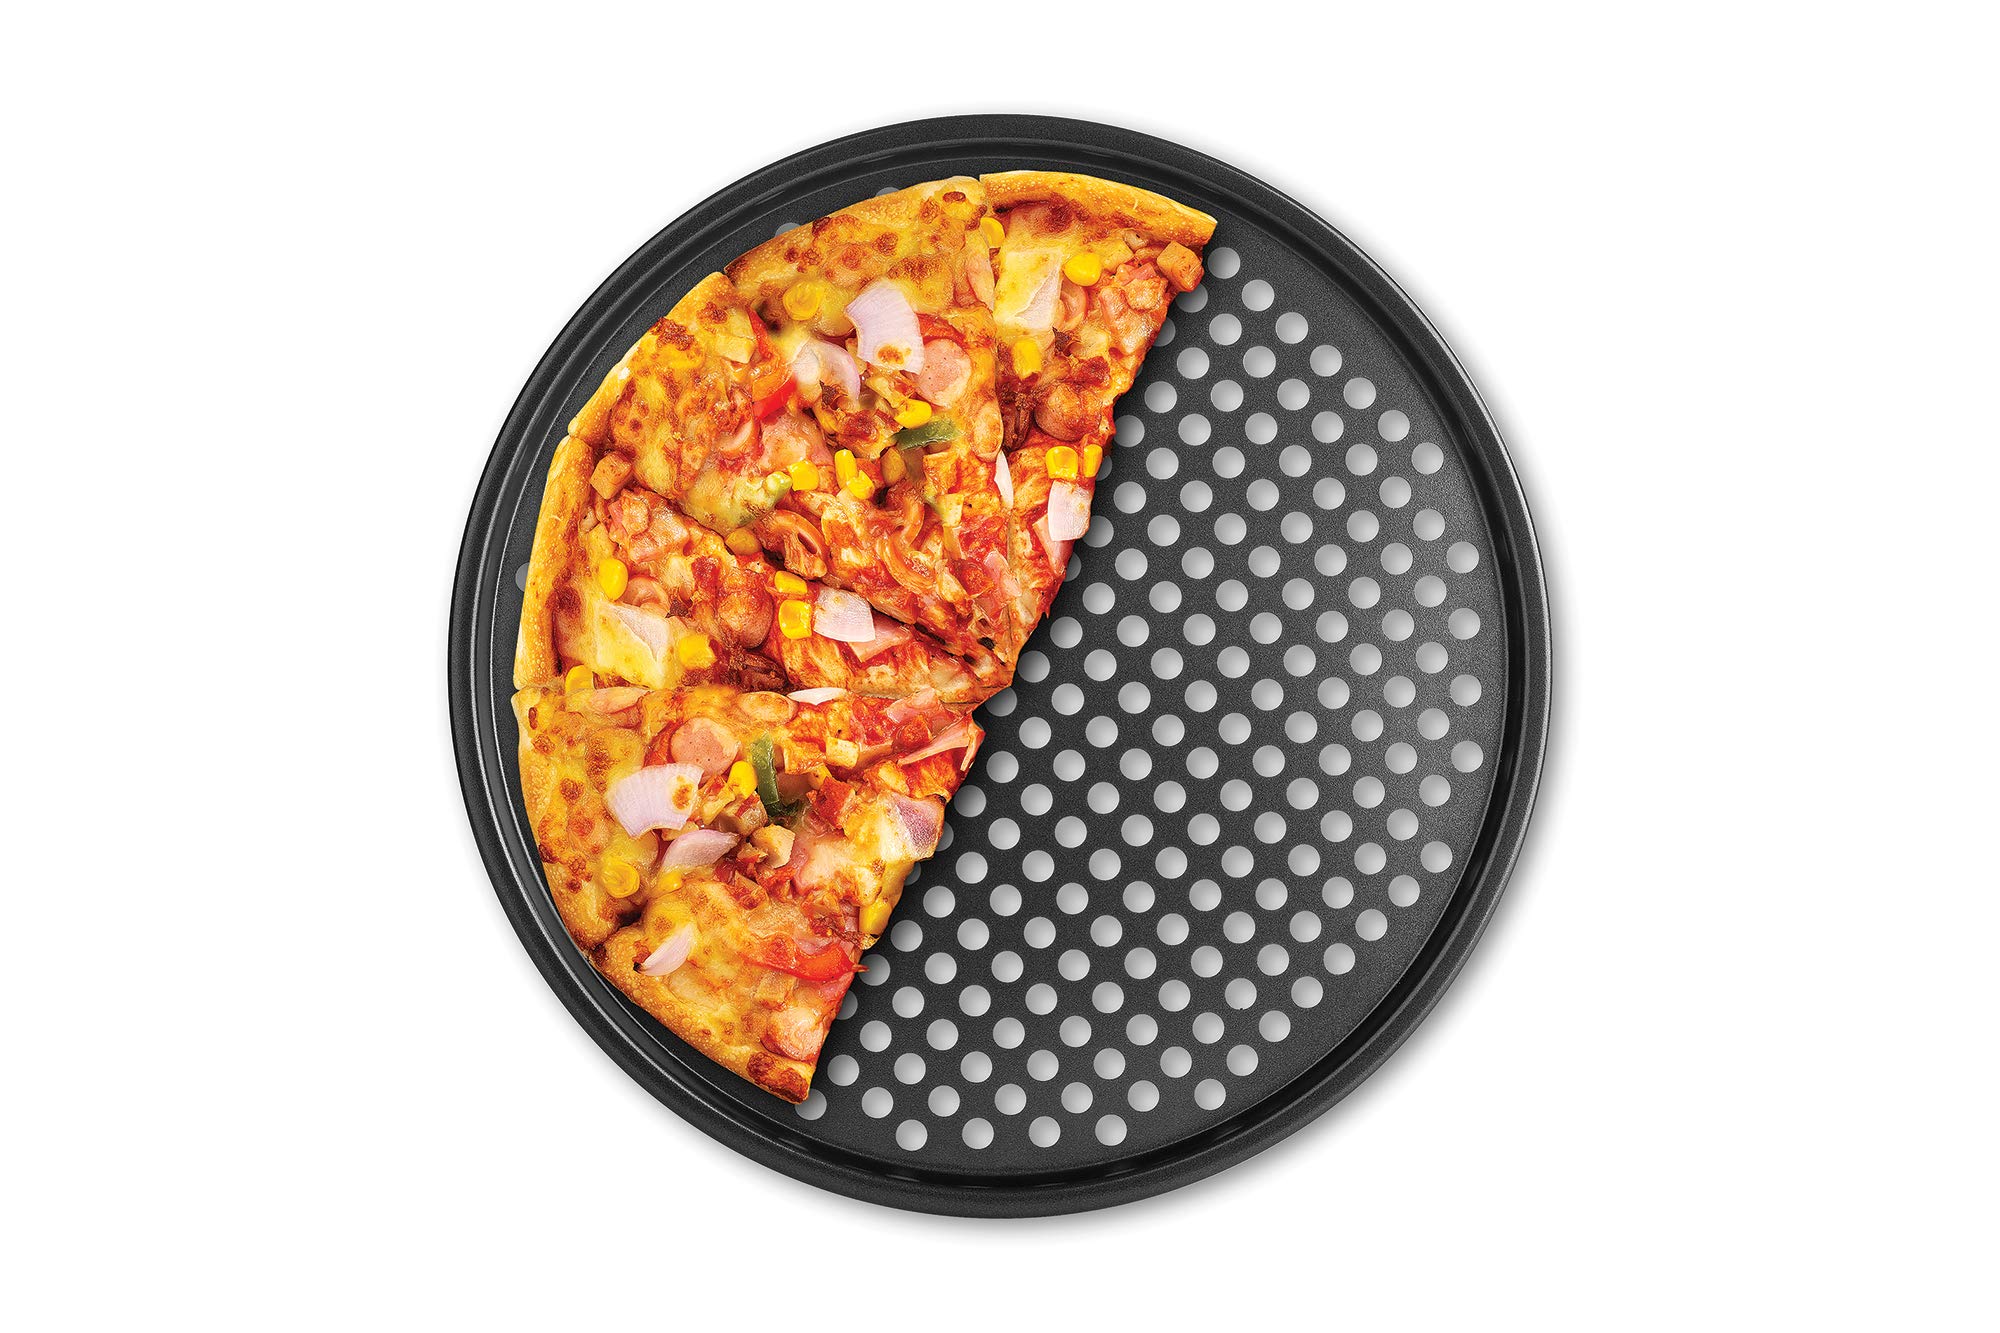 Fox Run Pizza Crisper Pan, Carbon Steel, Non-Stick,Black,14.5 x 14.5 x 0.25 inches